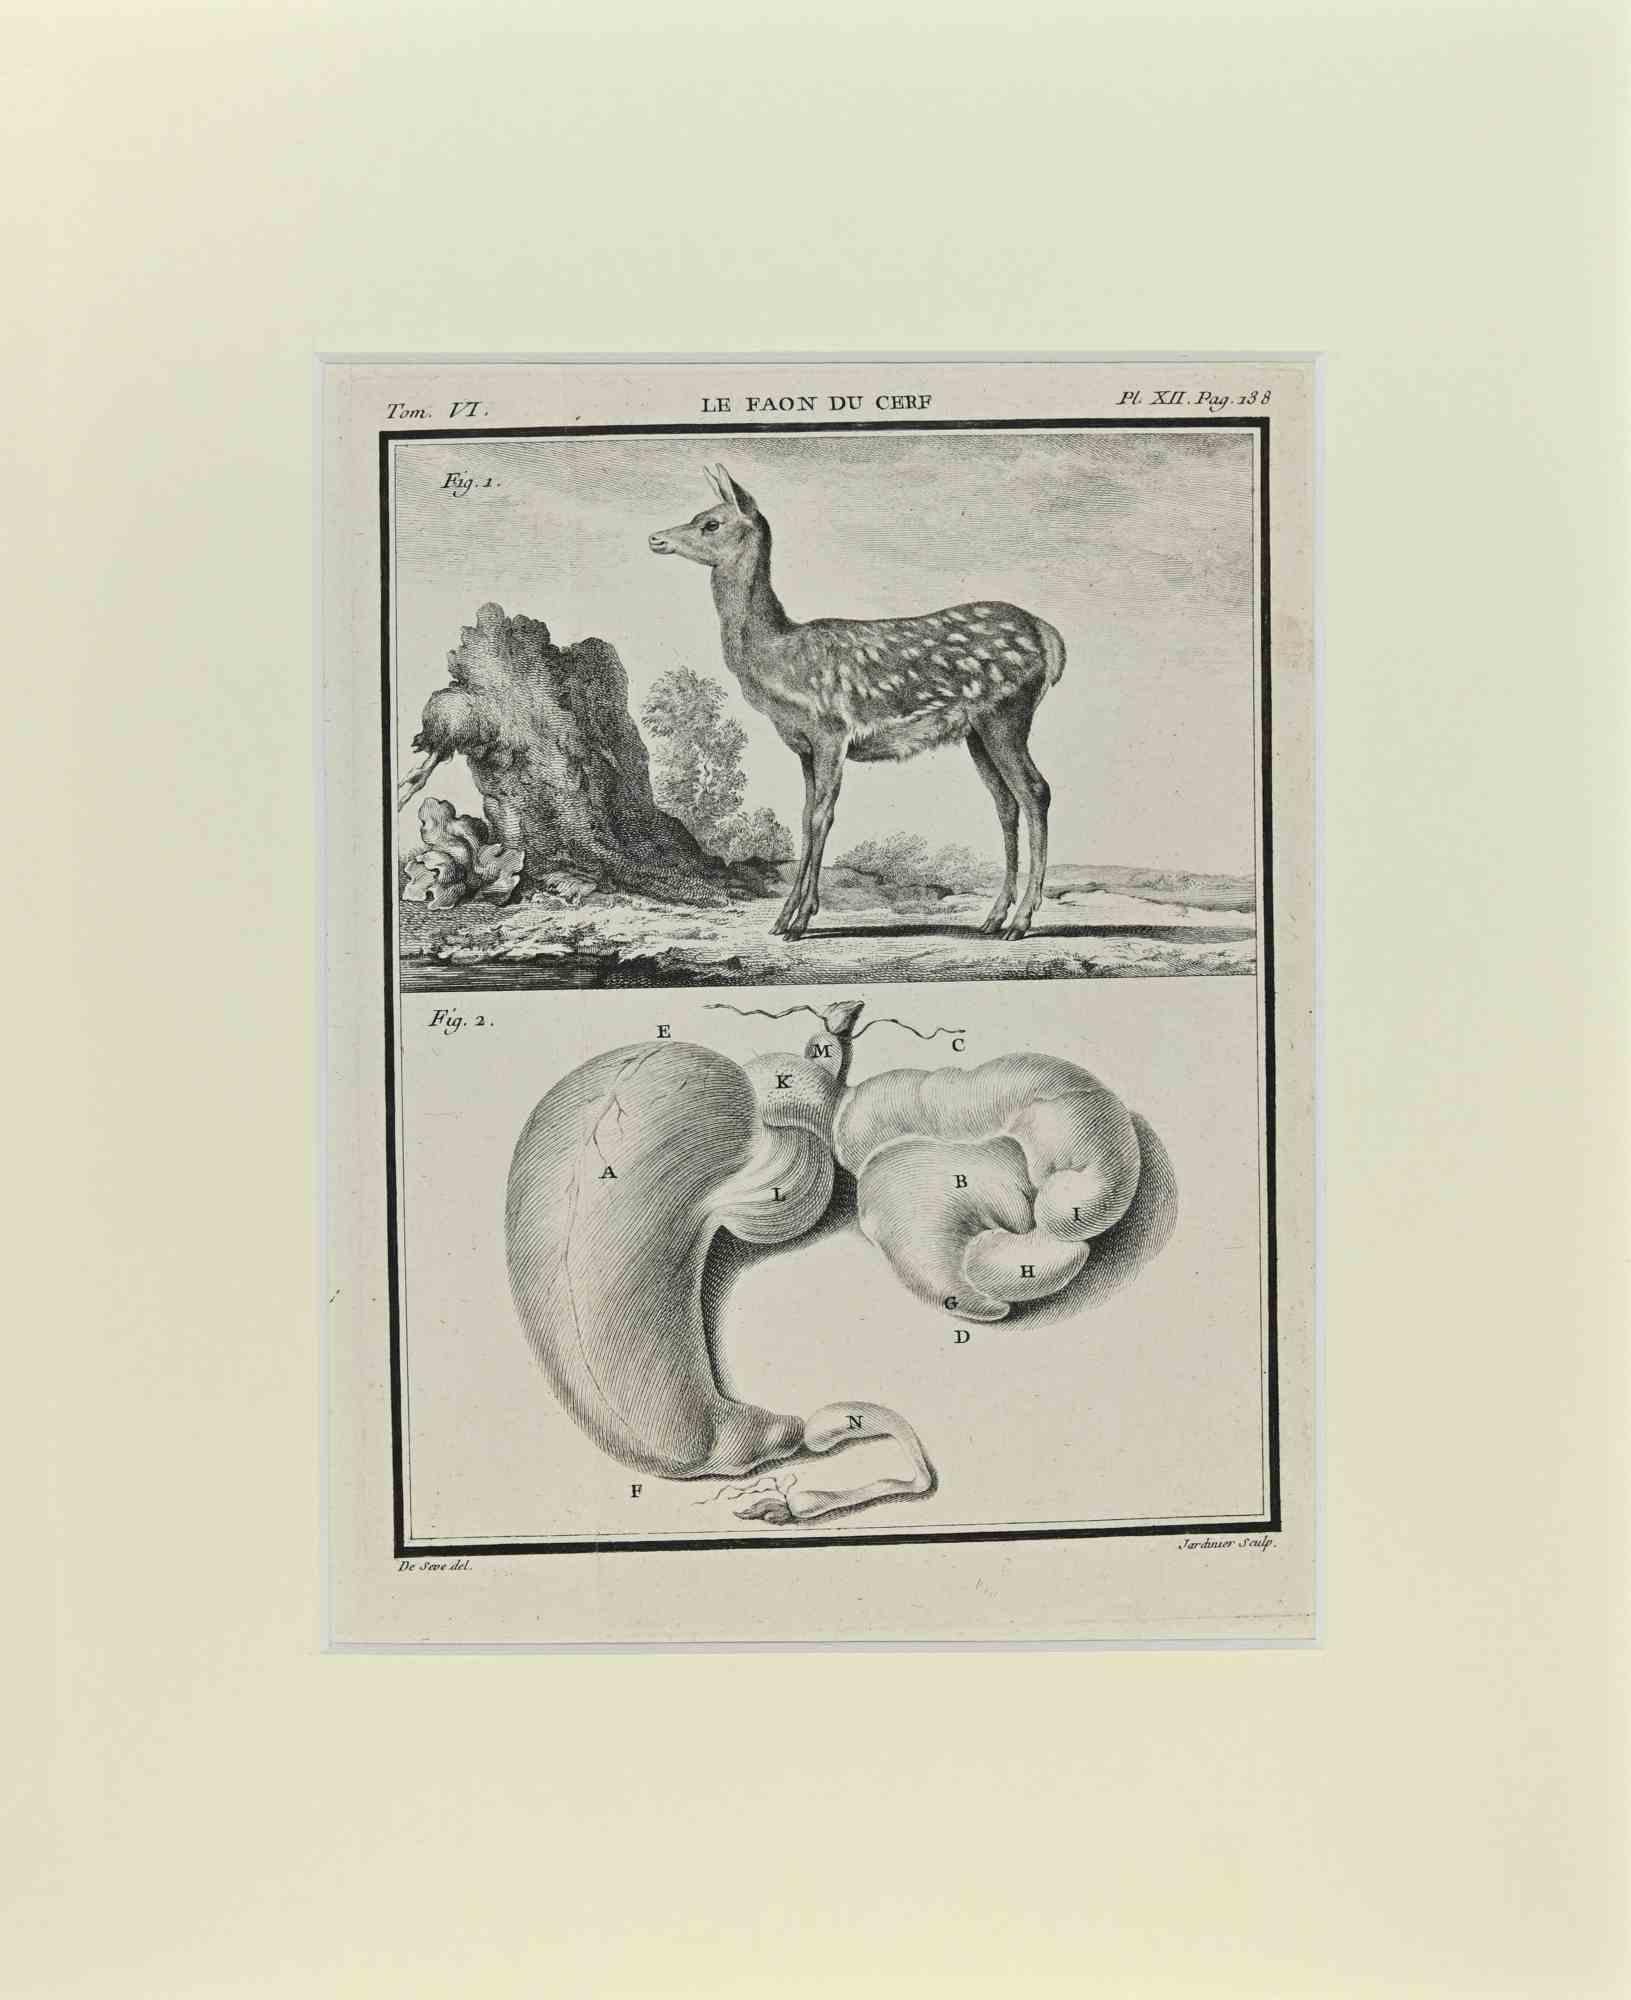 Jacques de Seve Animal Print - Le Faon du Cerf - Etching by Jacques De Sève - 1771